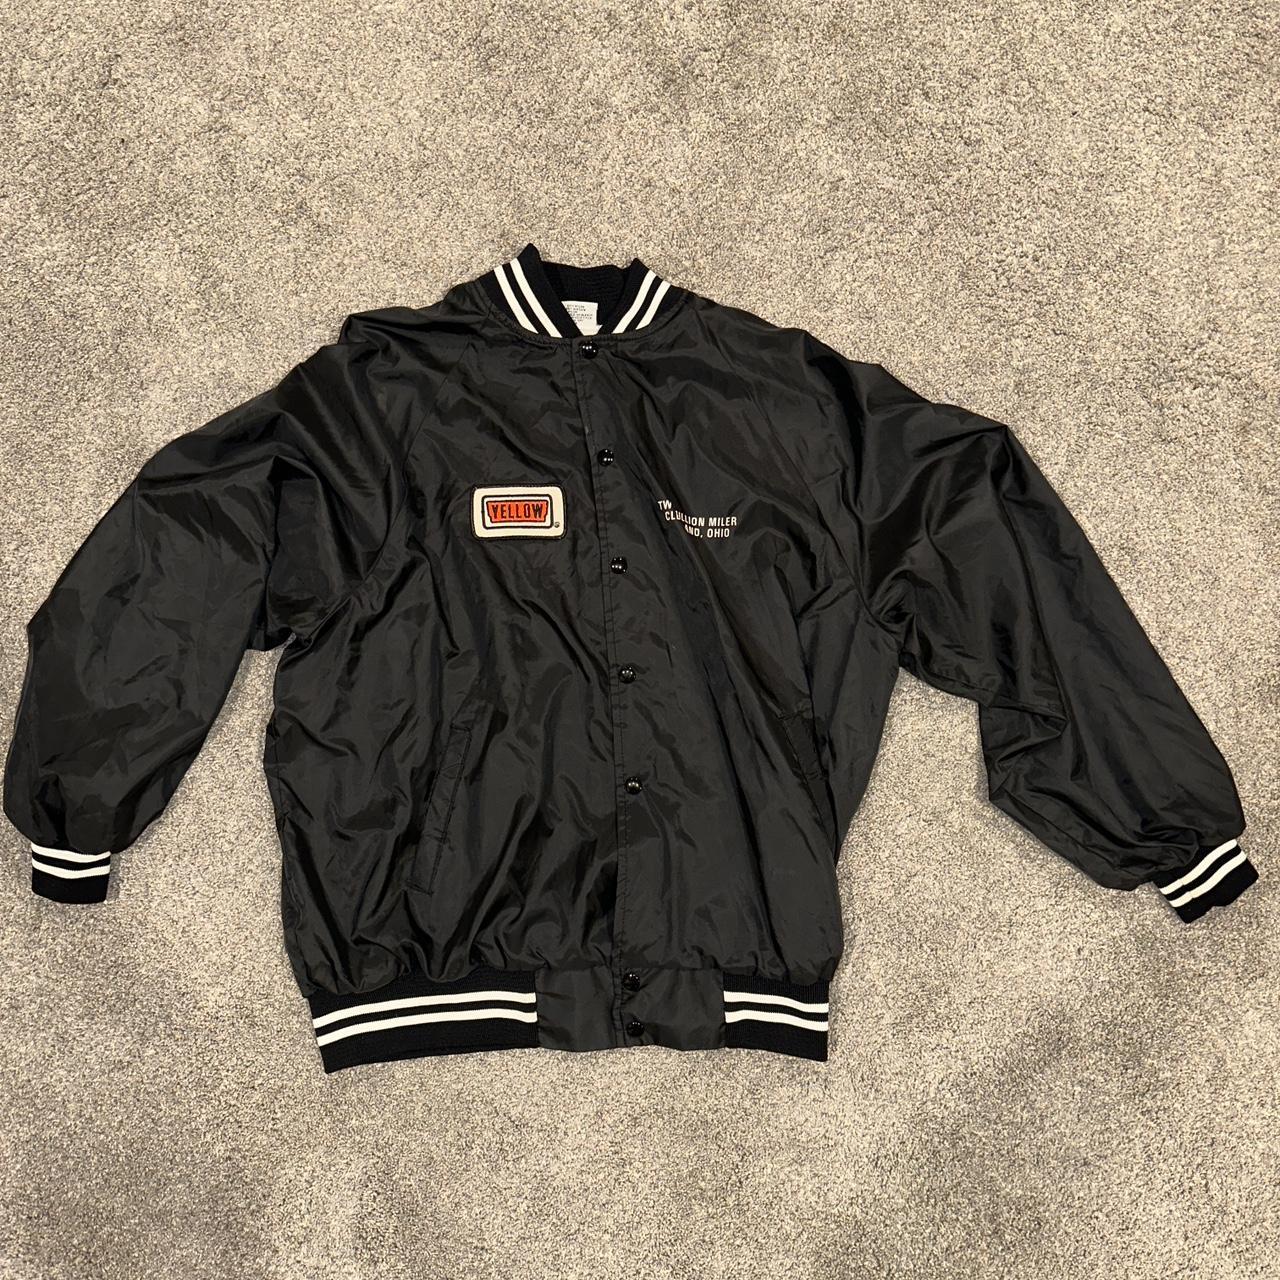 Vintage jacket Says xl definitely fits a little... - Depop